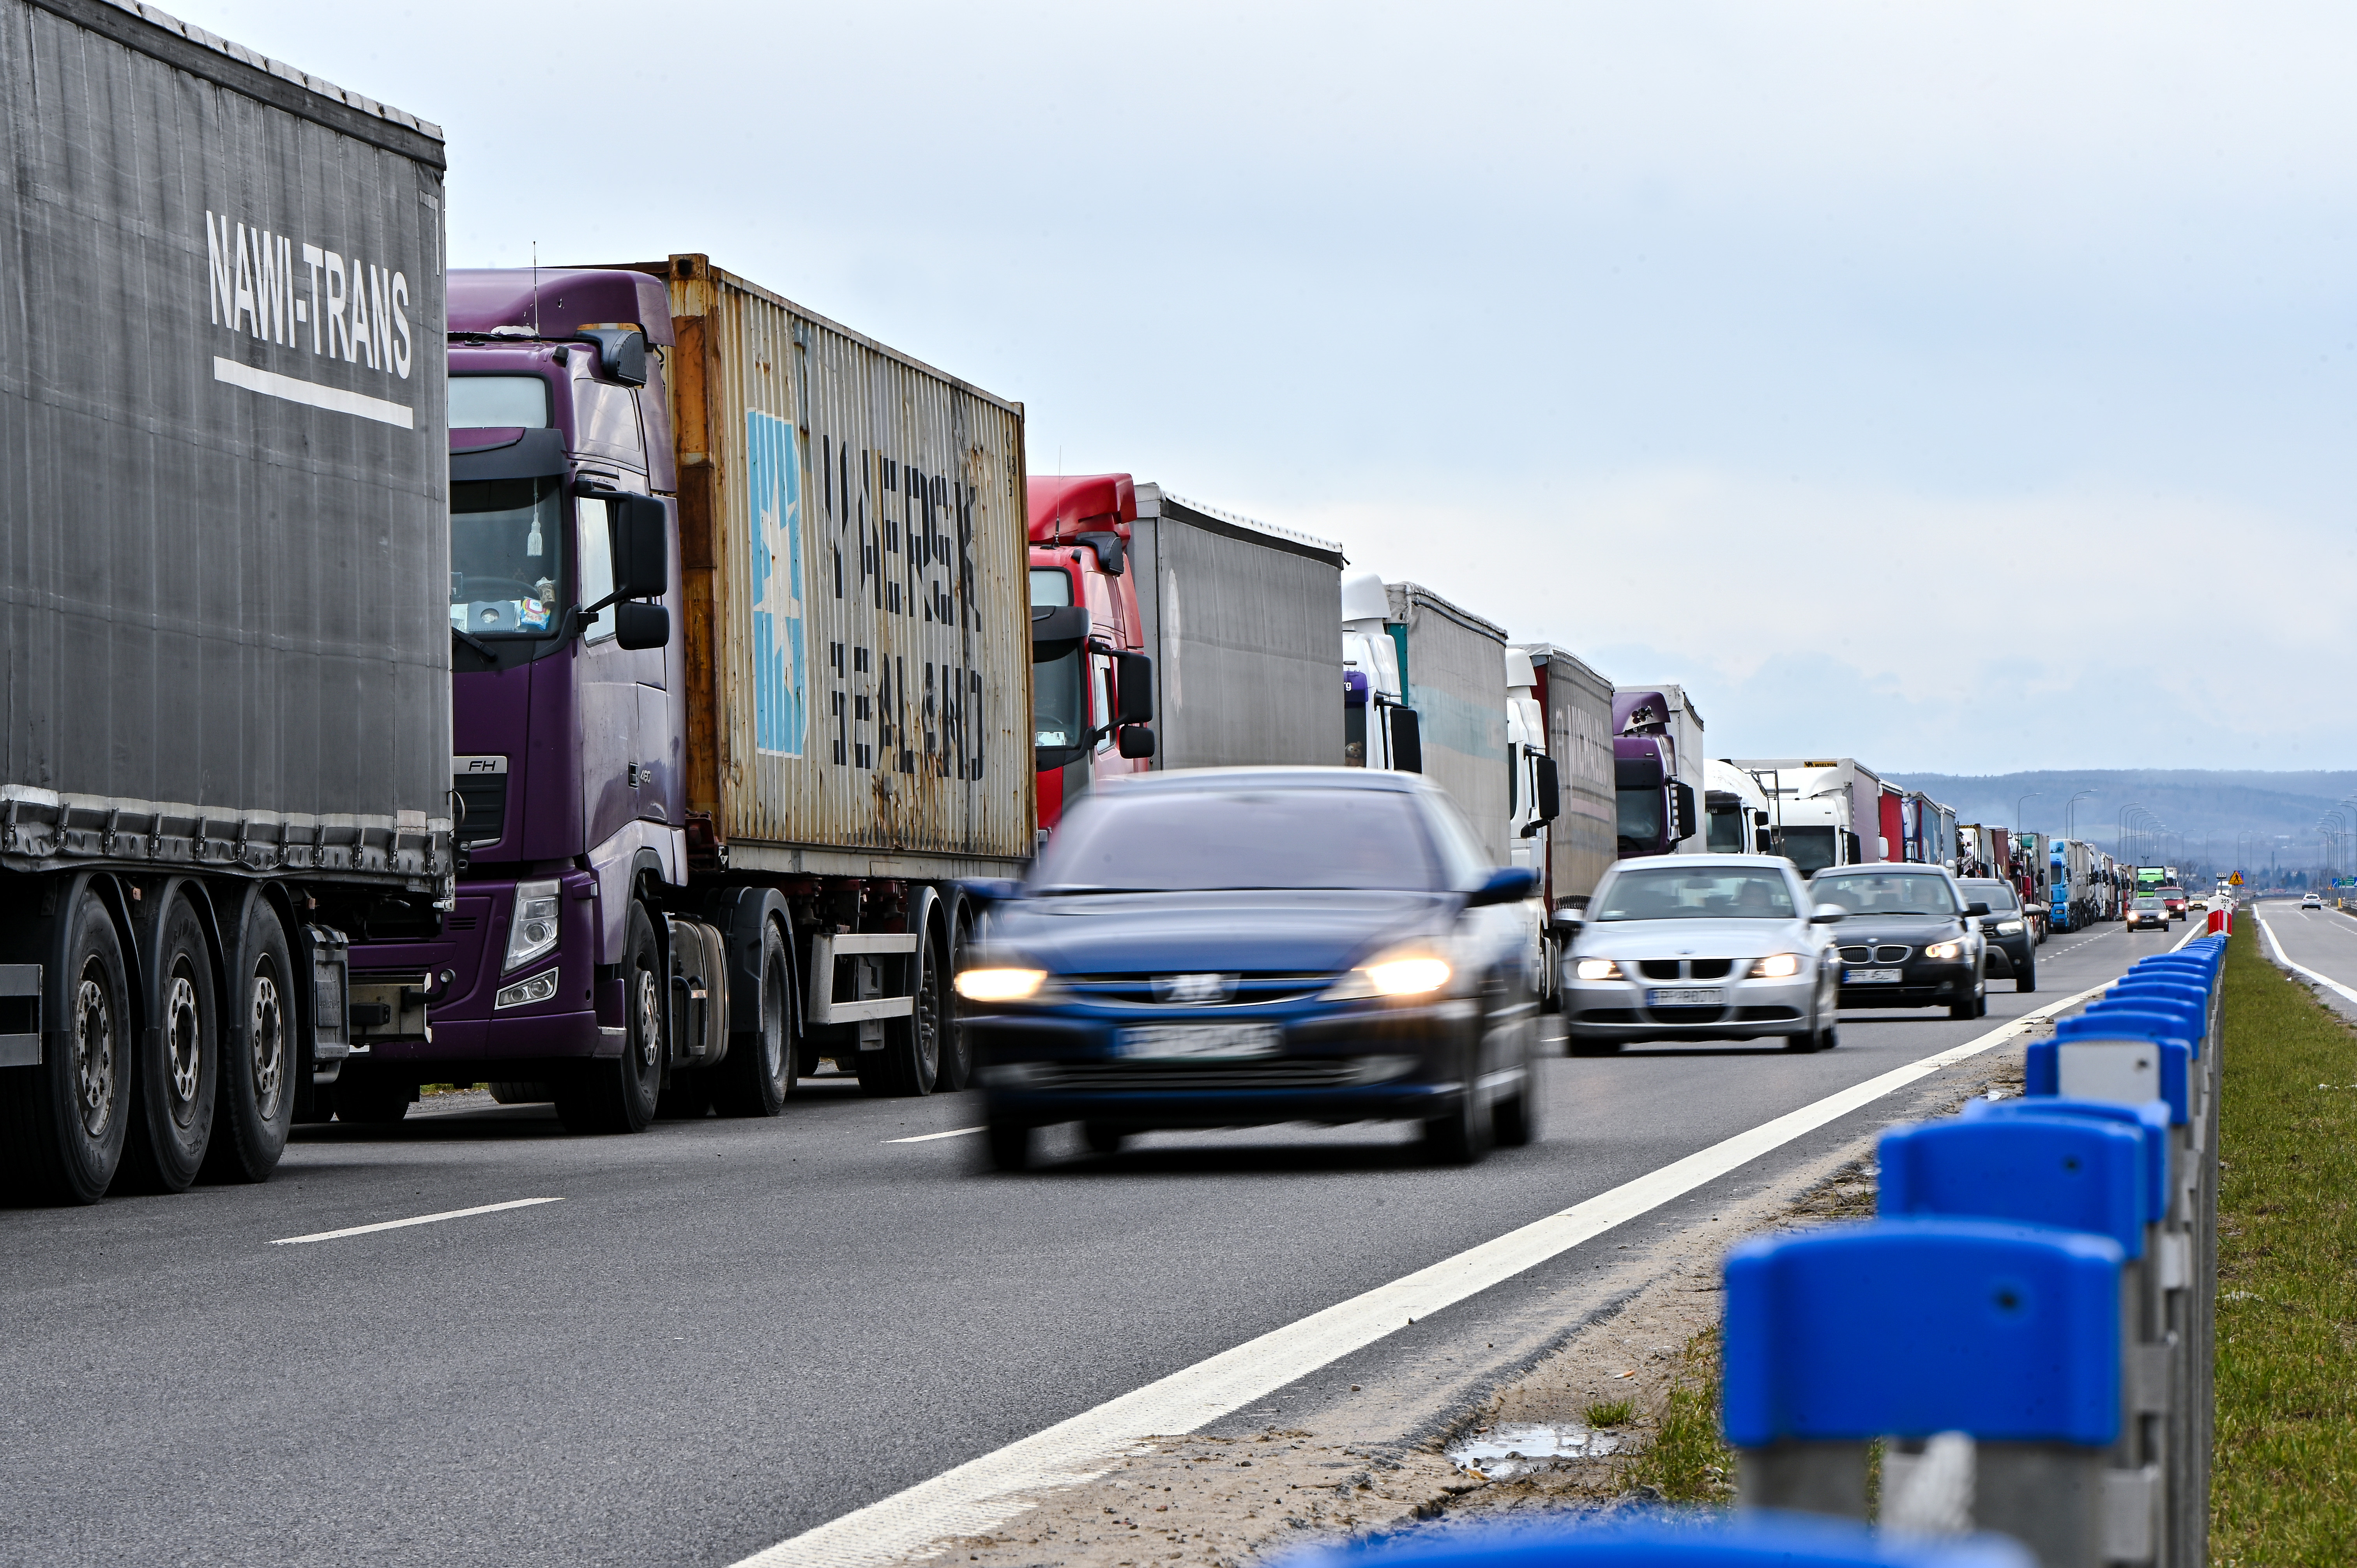 Lastwagen ukrainischer Spediteure bleiben am Grenzübergang an der ukrainisch-polnischen Grenze blockiert, Region Lviv, Westukraine